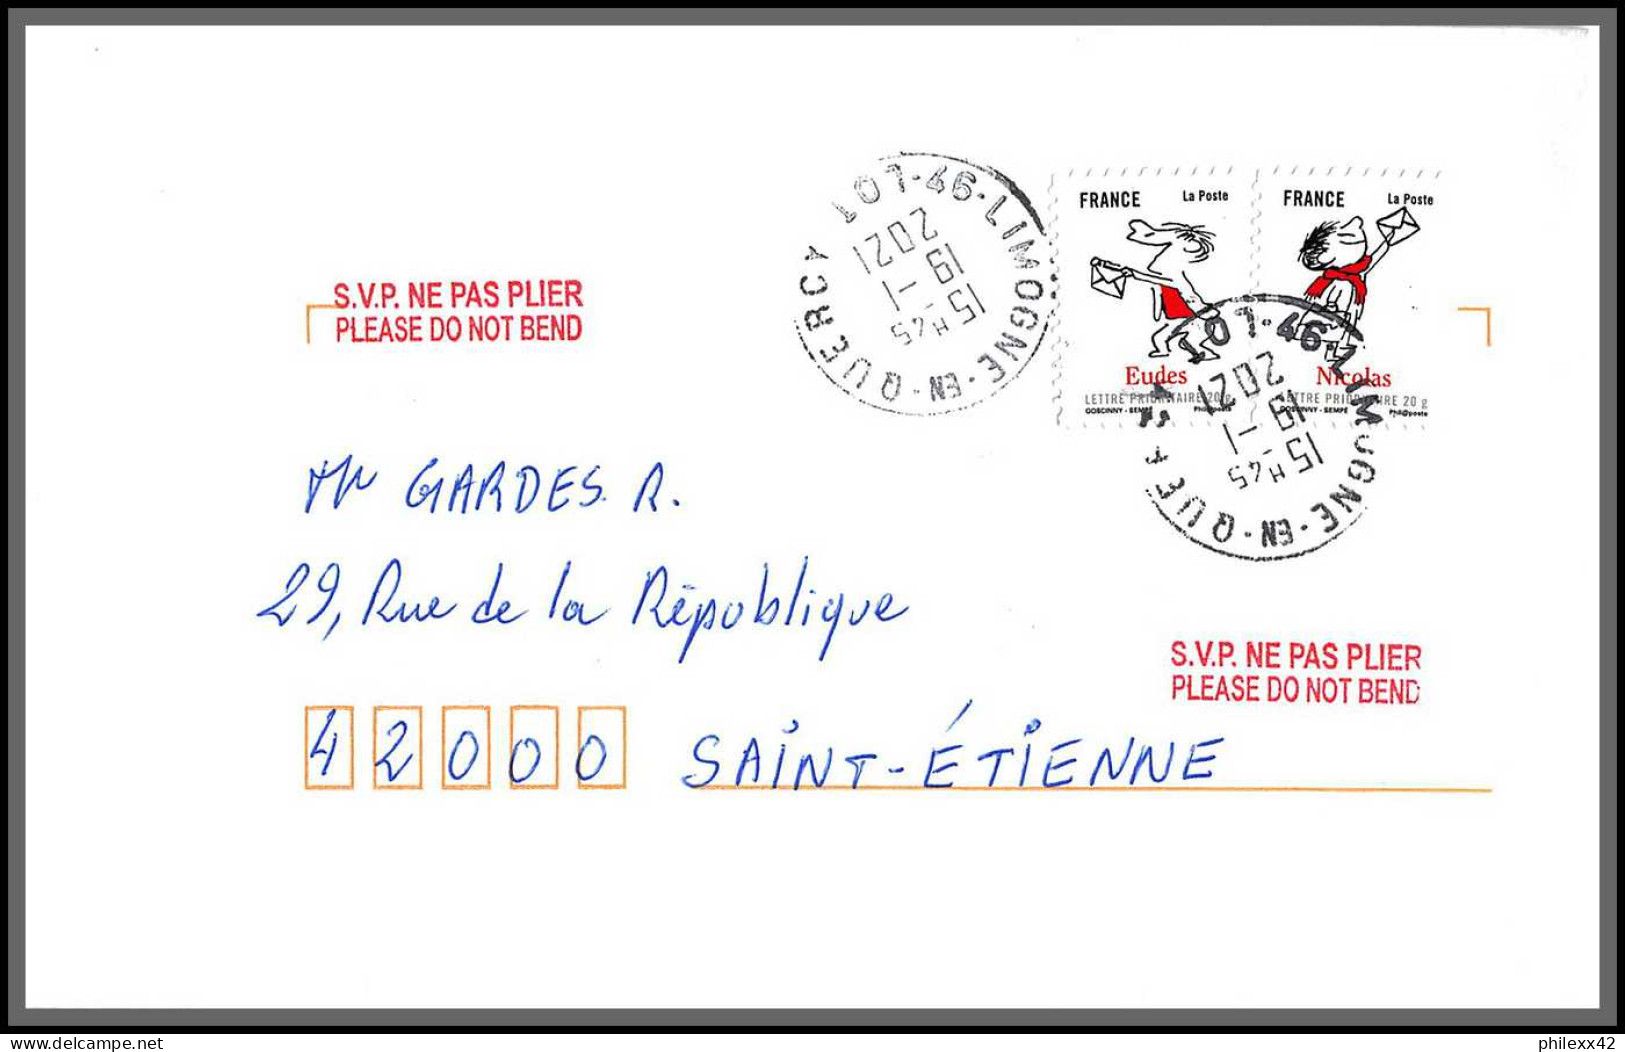 95870 - lot de 22 courriers lettres enveloppes de l'année 2021 divers affranchissements en EUROS